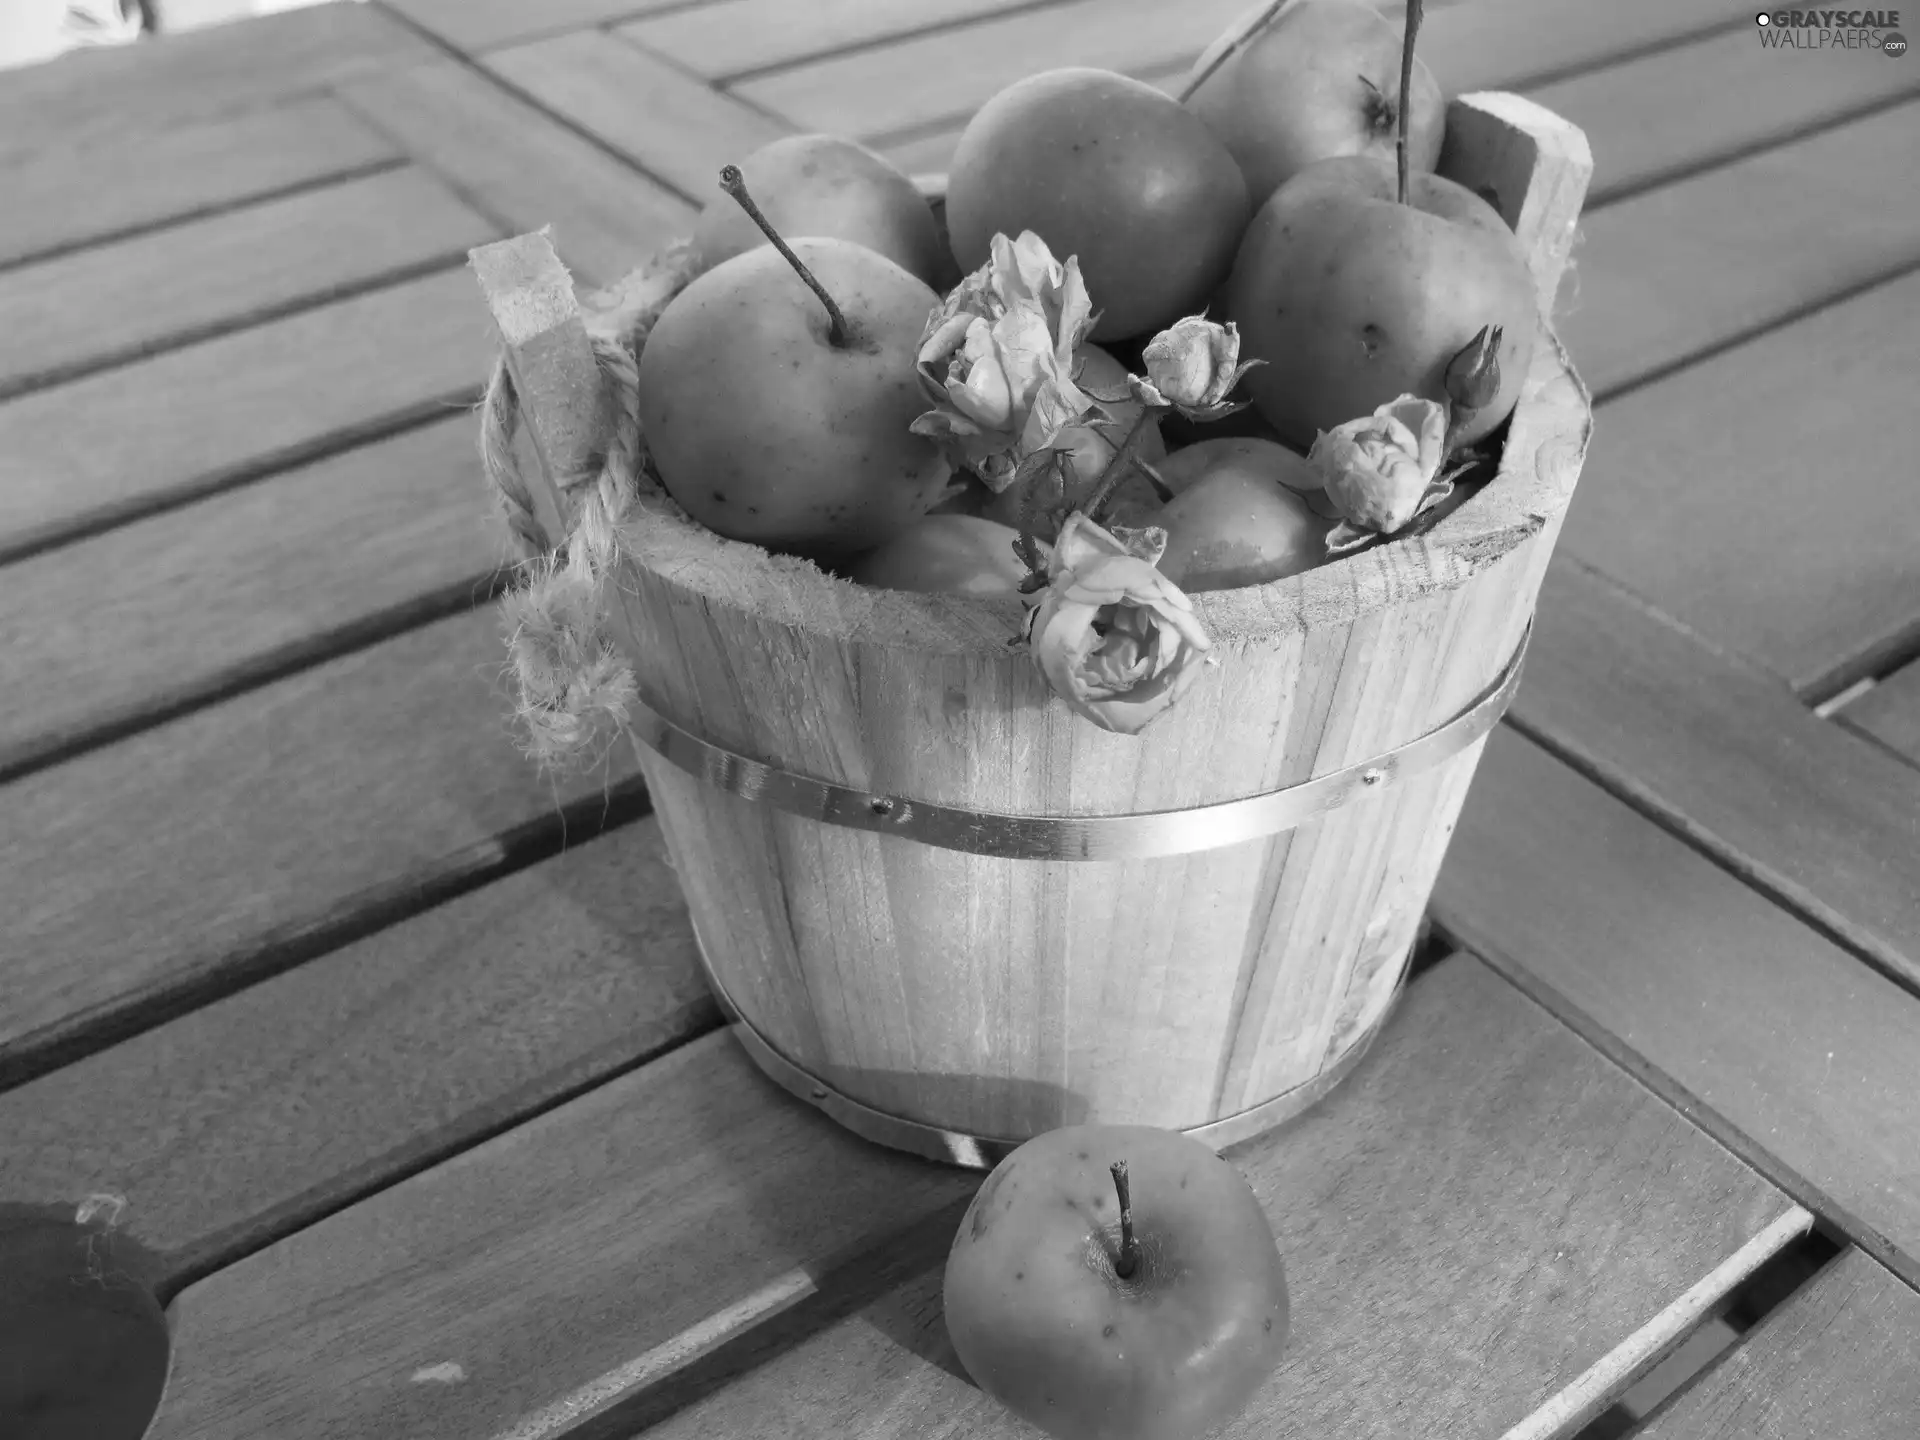 wooden, apples, roses, Ceberek